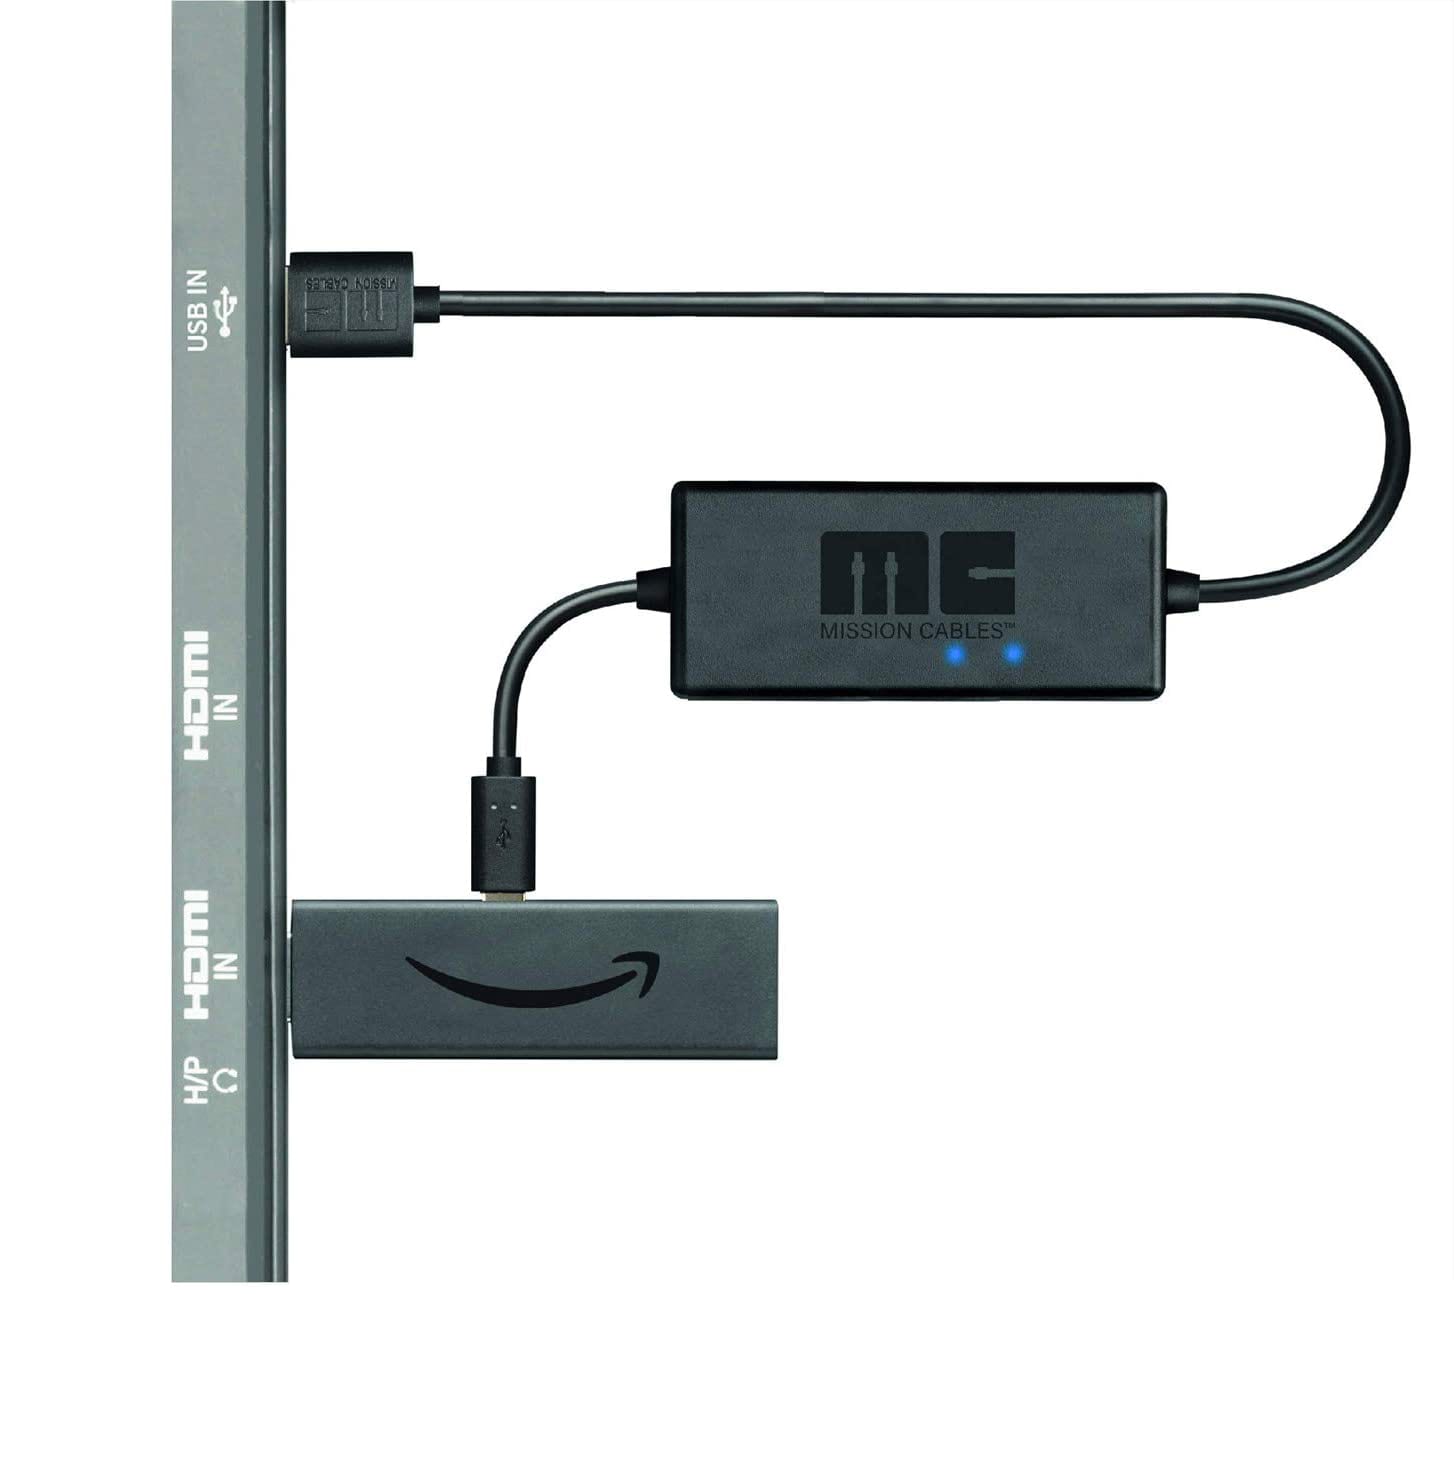 How to Add external storage to your  FireTV Stick via USB